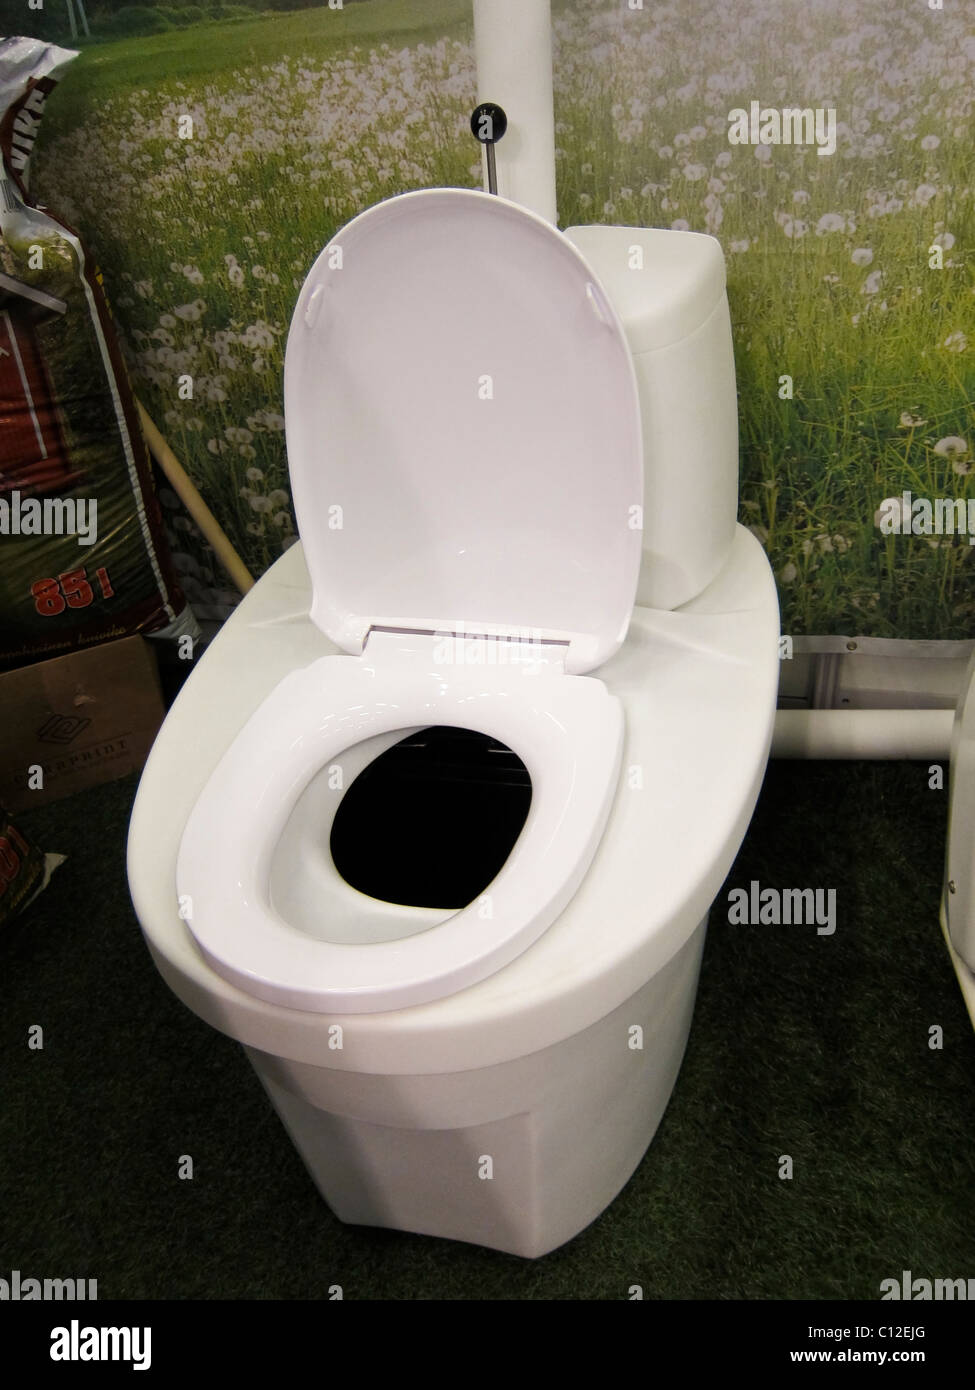 Toilette ecologica immagini e fotografie stock ad alta risoluzione - Alamy